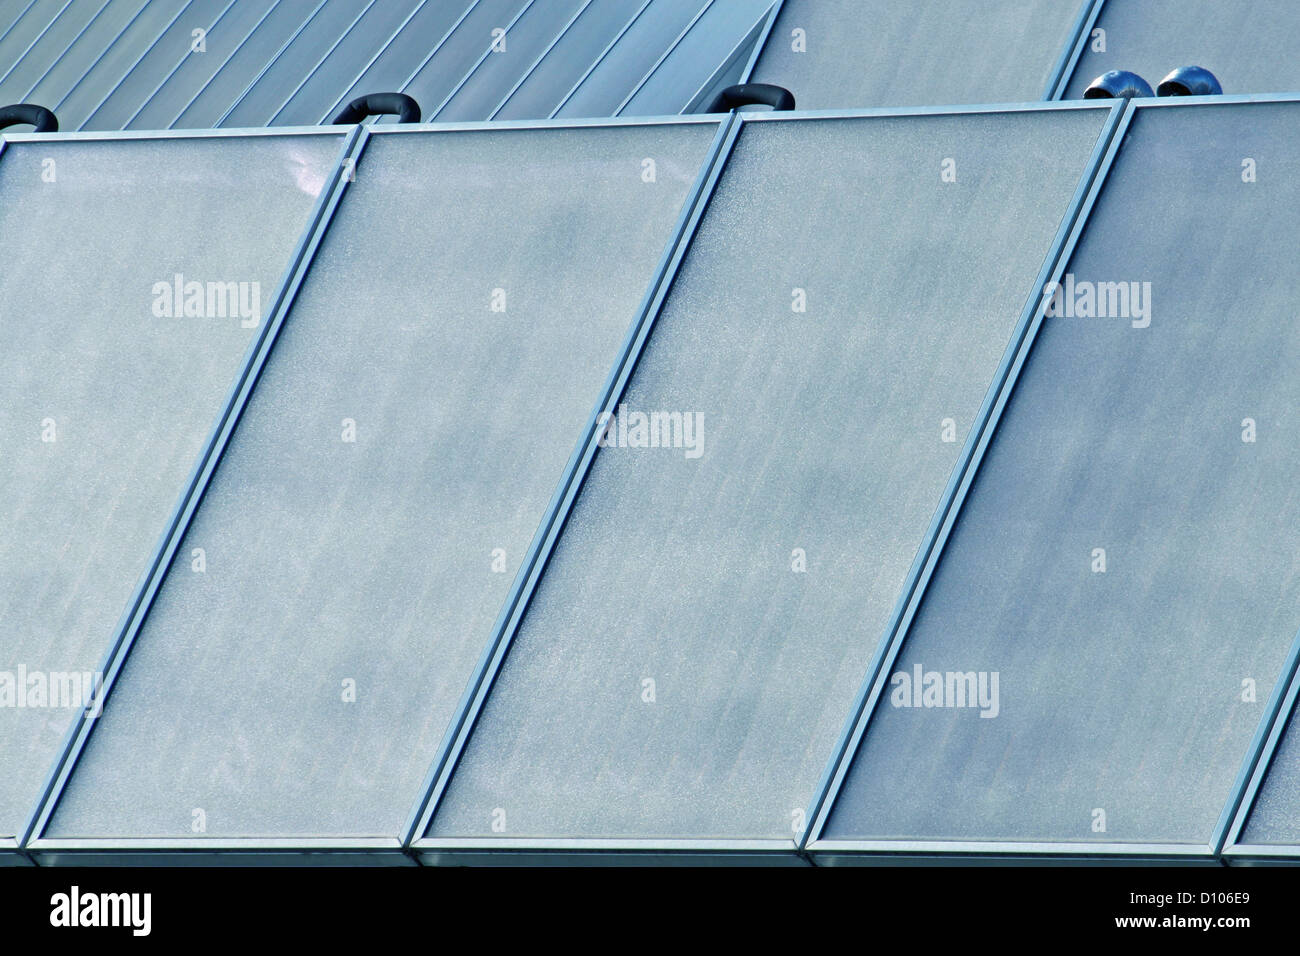 Des panneaux solaires pour produire de l'électricité sans pollution Banque D'Images